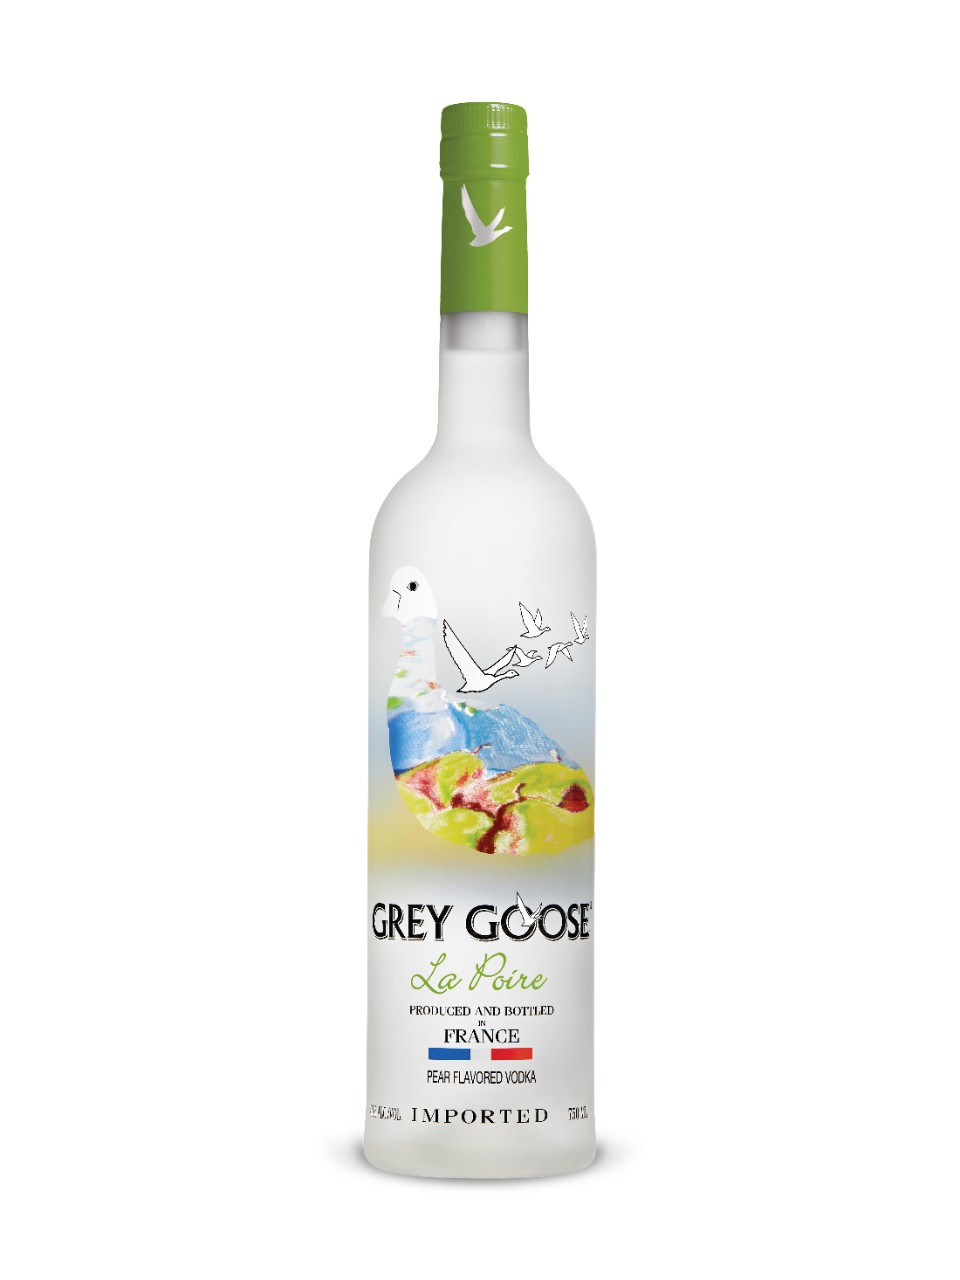 Grey goose la poire vodka